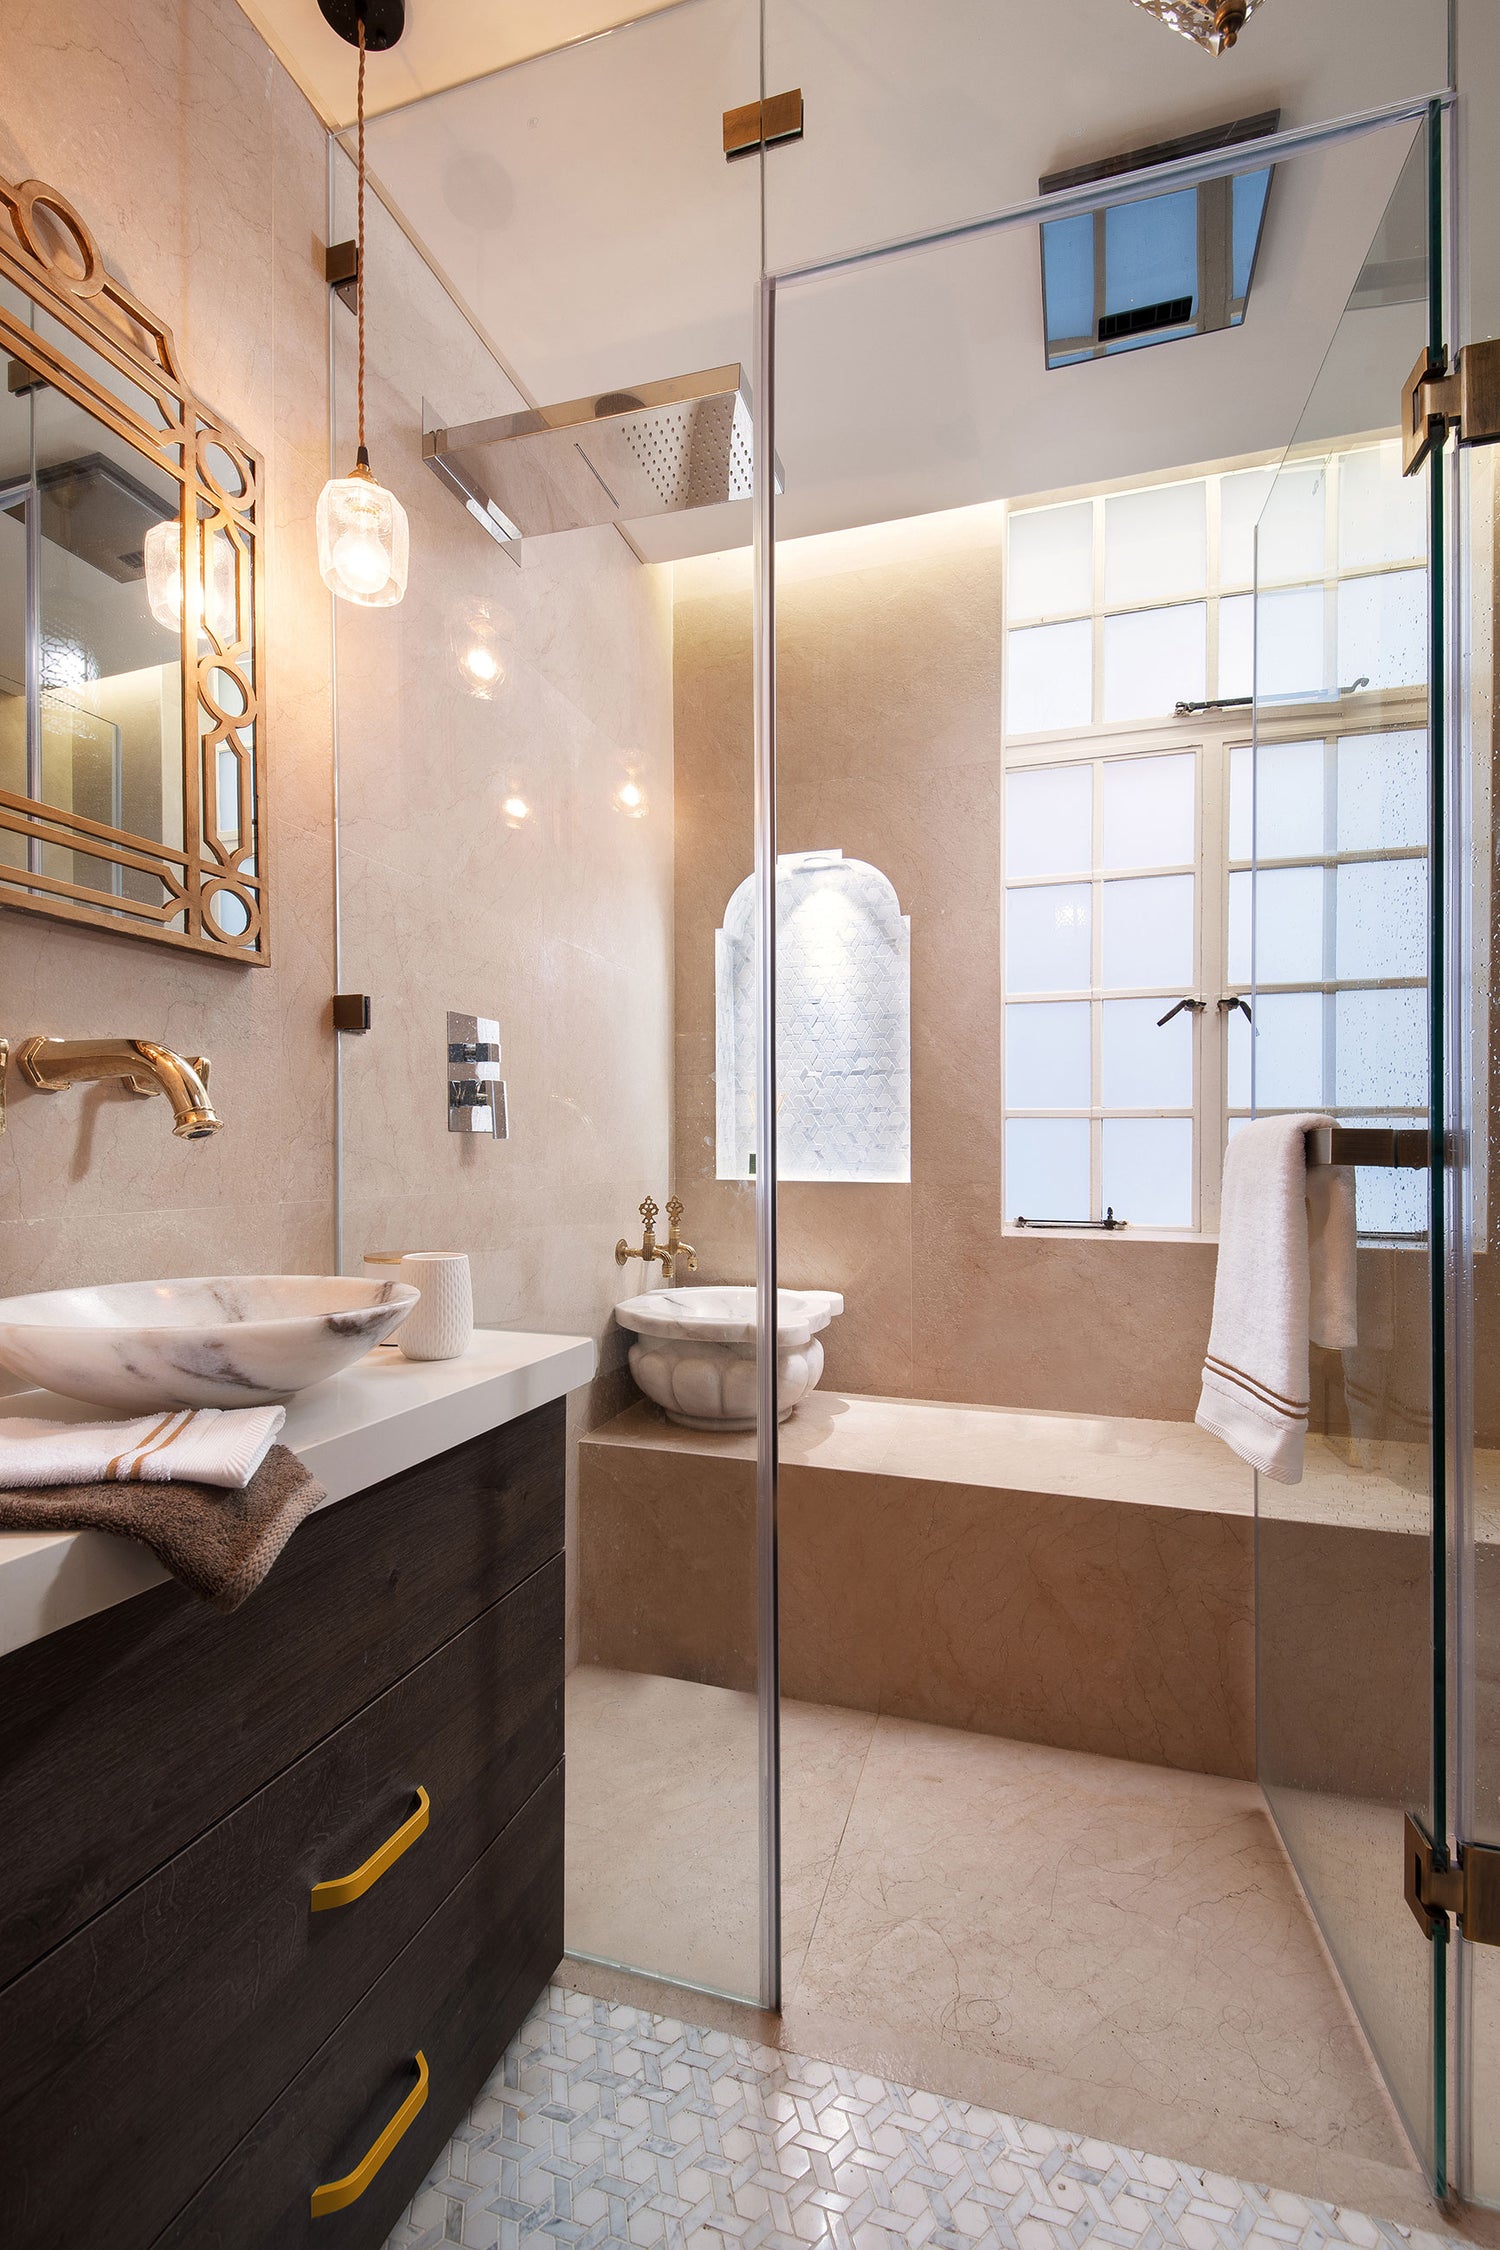 Casa de banho renovada, com linhas modernas e clássicas no apartamento renovado de Campo de Ourique.